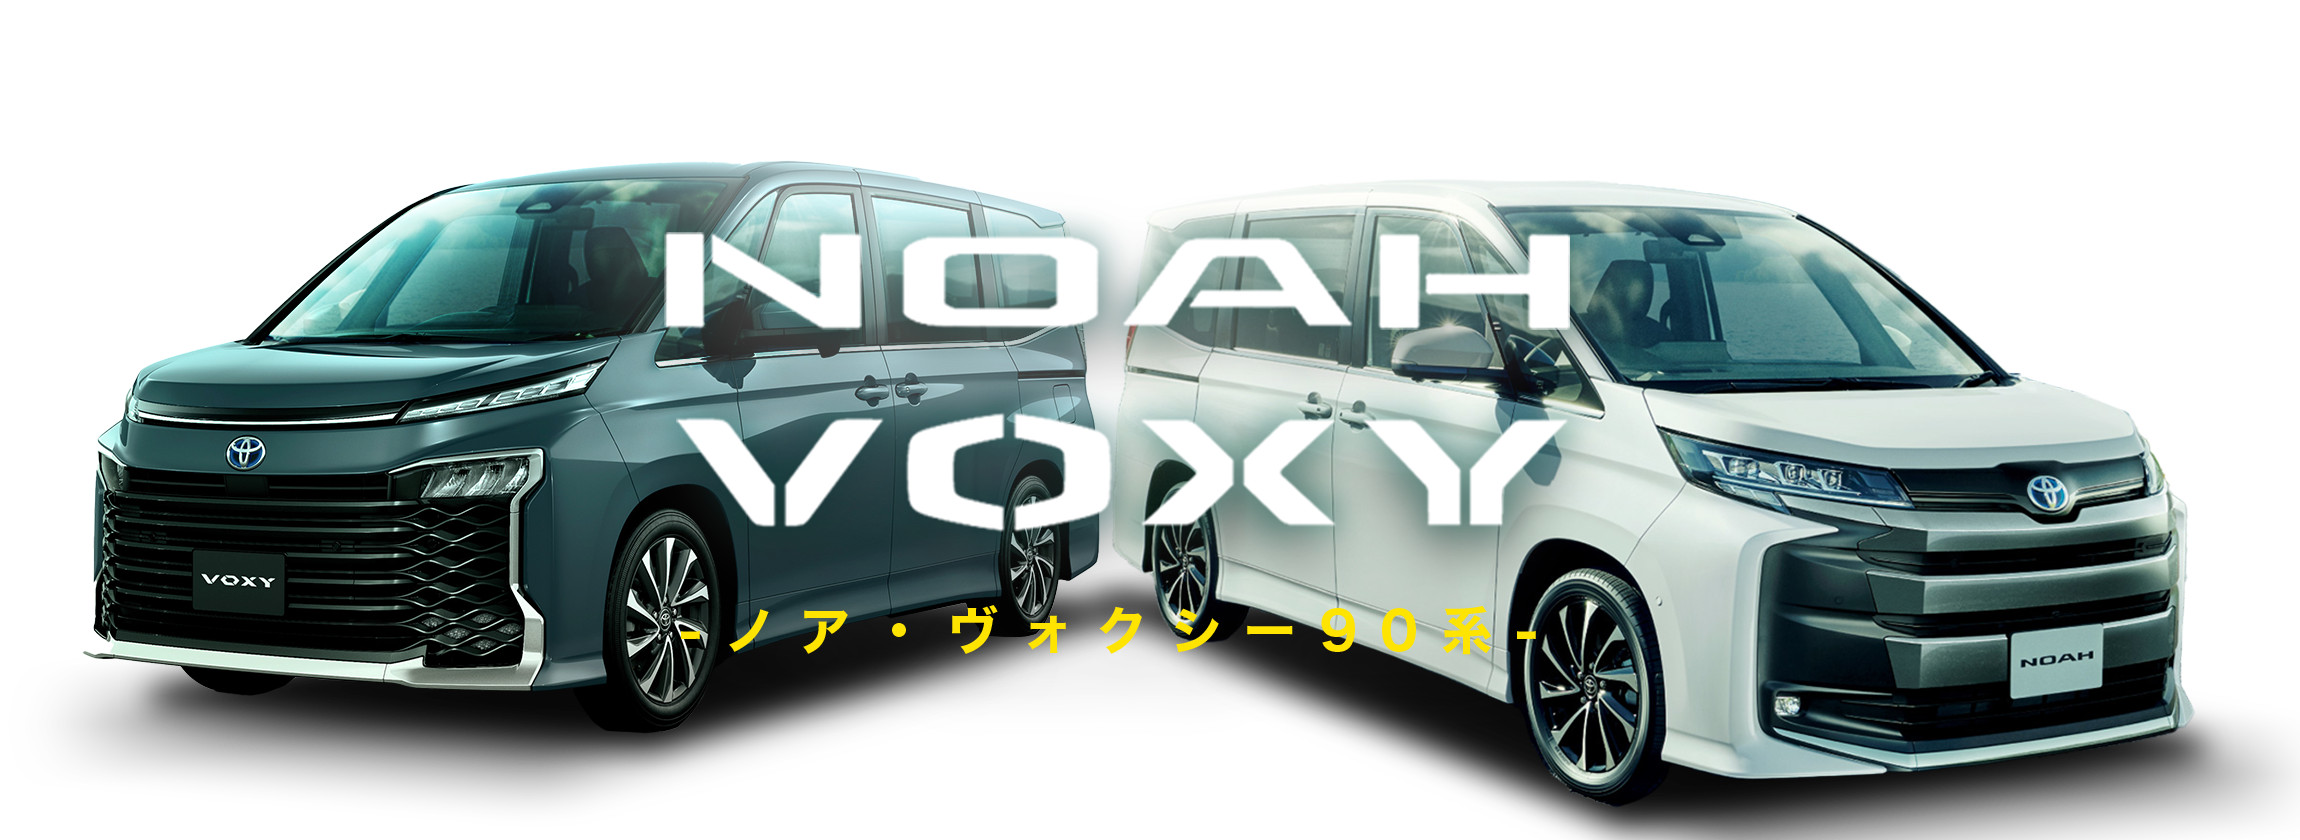 トヨタ ノア ヴォクシー 90系 特集ページ AutoOne